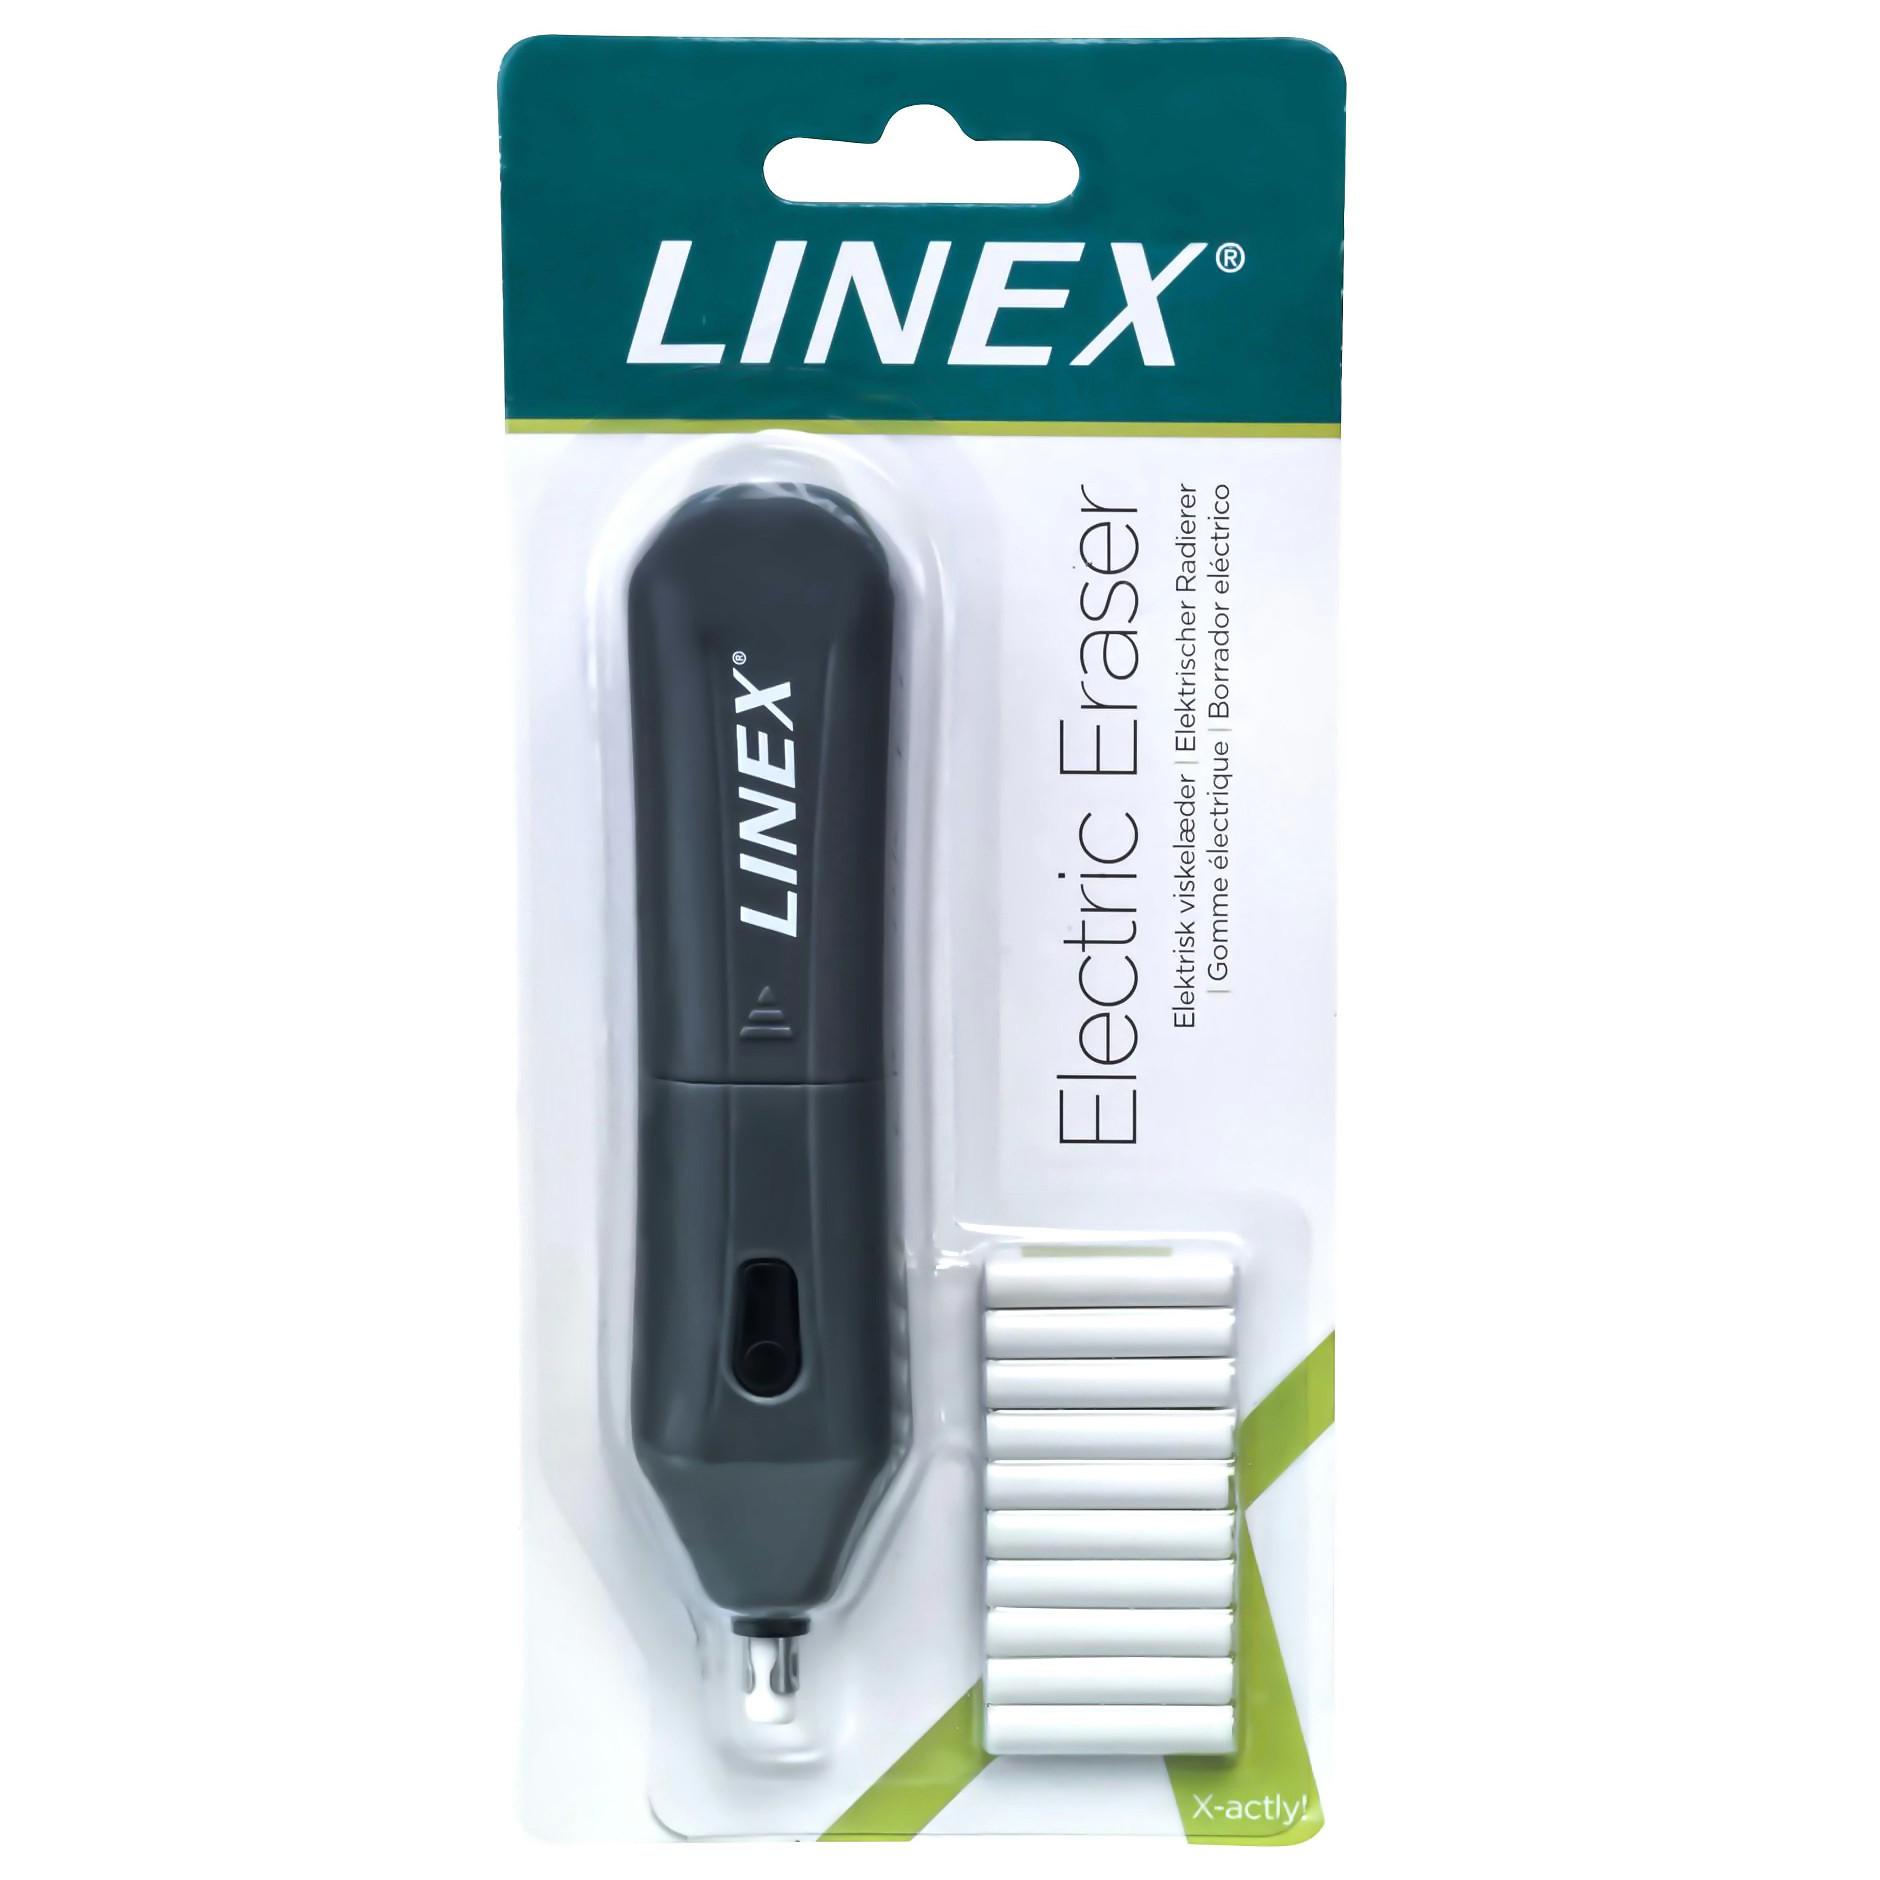 Linex LINEX Elektrischer Radierer 400098690 inkl. 10 Radierer  